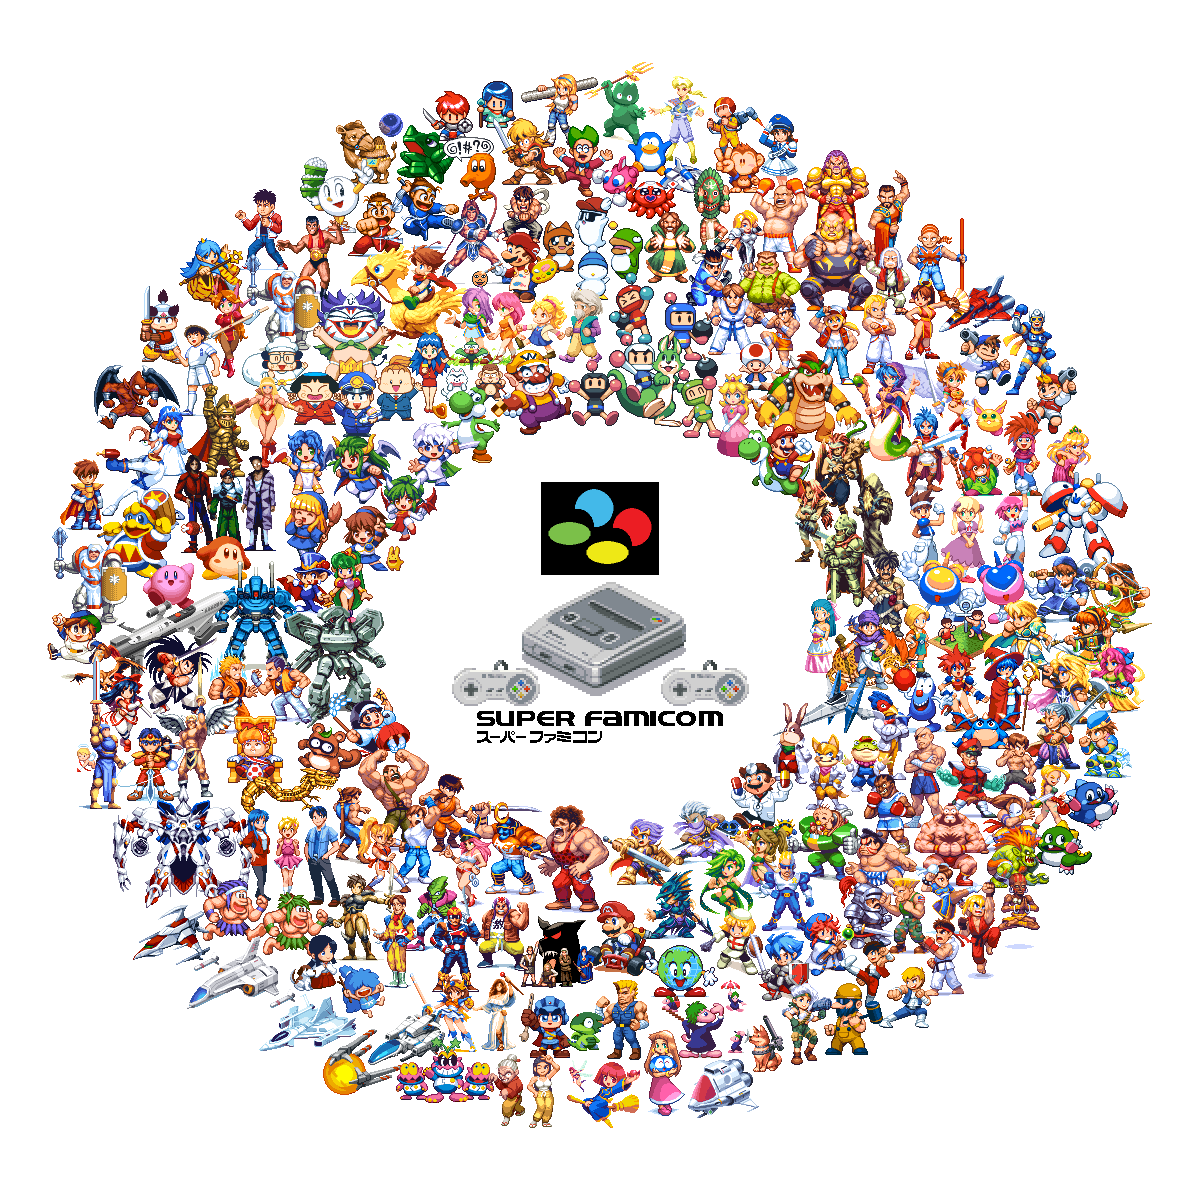 ロックマン(キャラクター) ,ピカチュウ ,サムス・アラン ,ソニック ,ゼニガメ 「今ある分のスーパーファミコンのゲーム達です。毎年ちょっとずつ円が広がっていくとい」|フラッグさんのイラスト